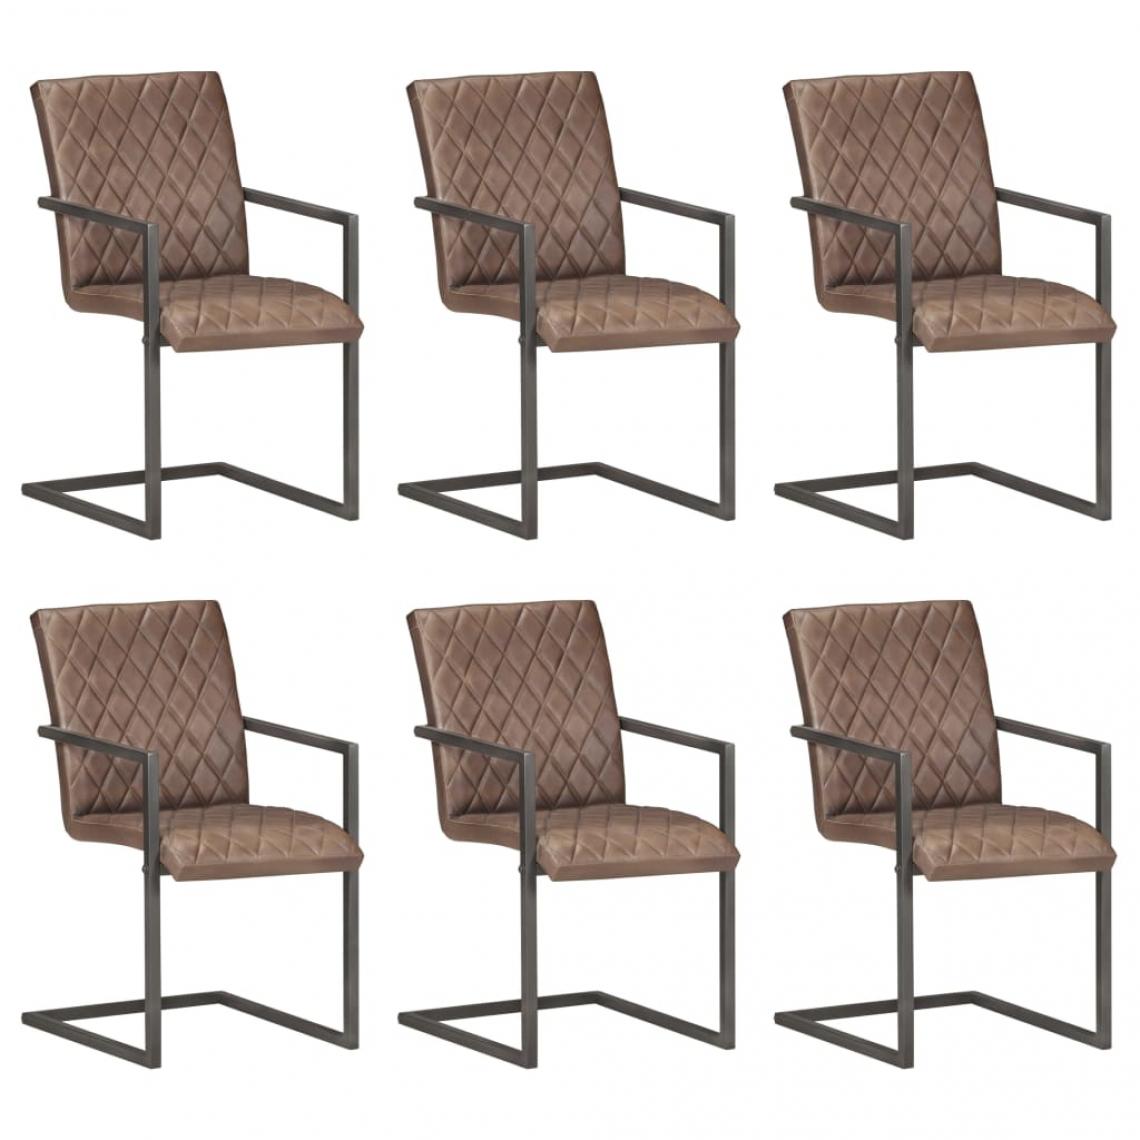 Decoshop26 - Lot de 6 chaises de salle à manger cuisine cantilever design rétro cuir véritable marron CDS022296 - Chaises